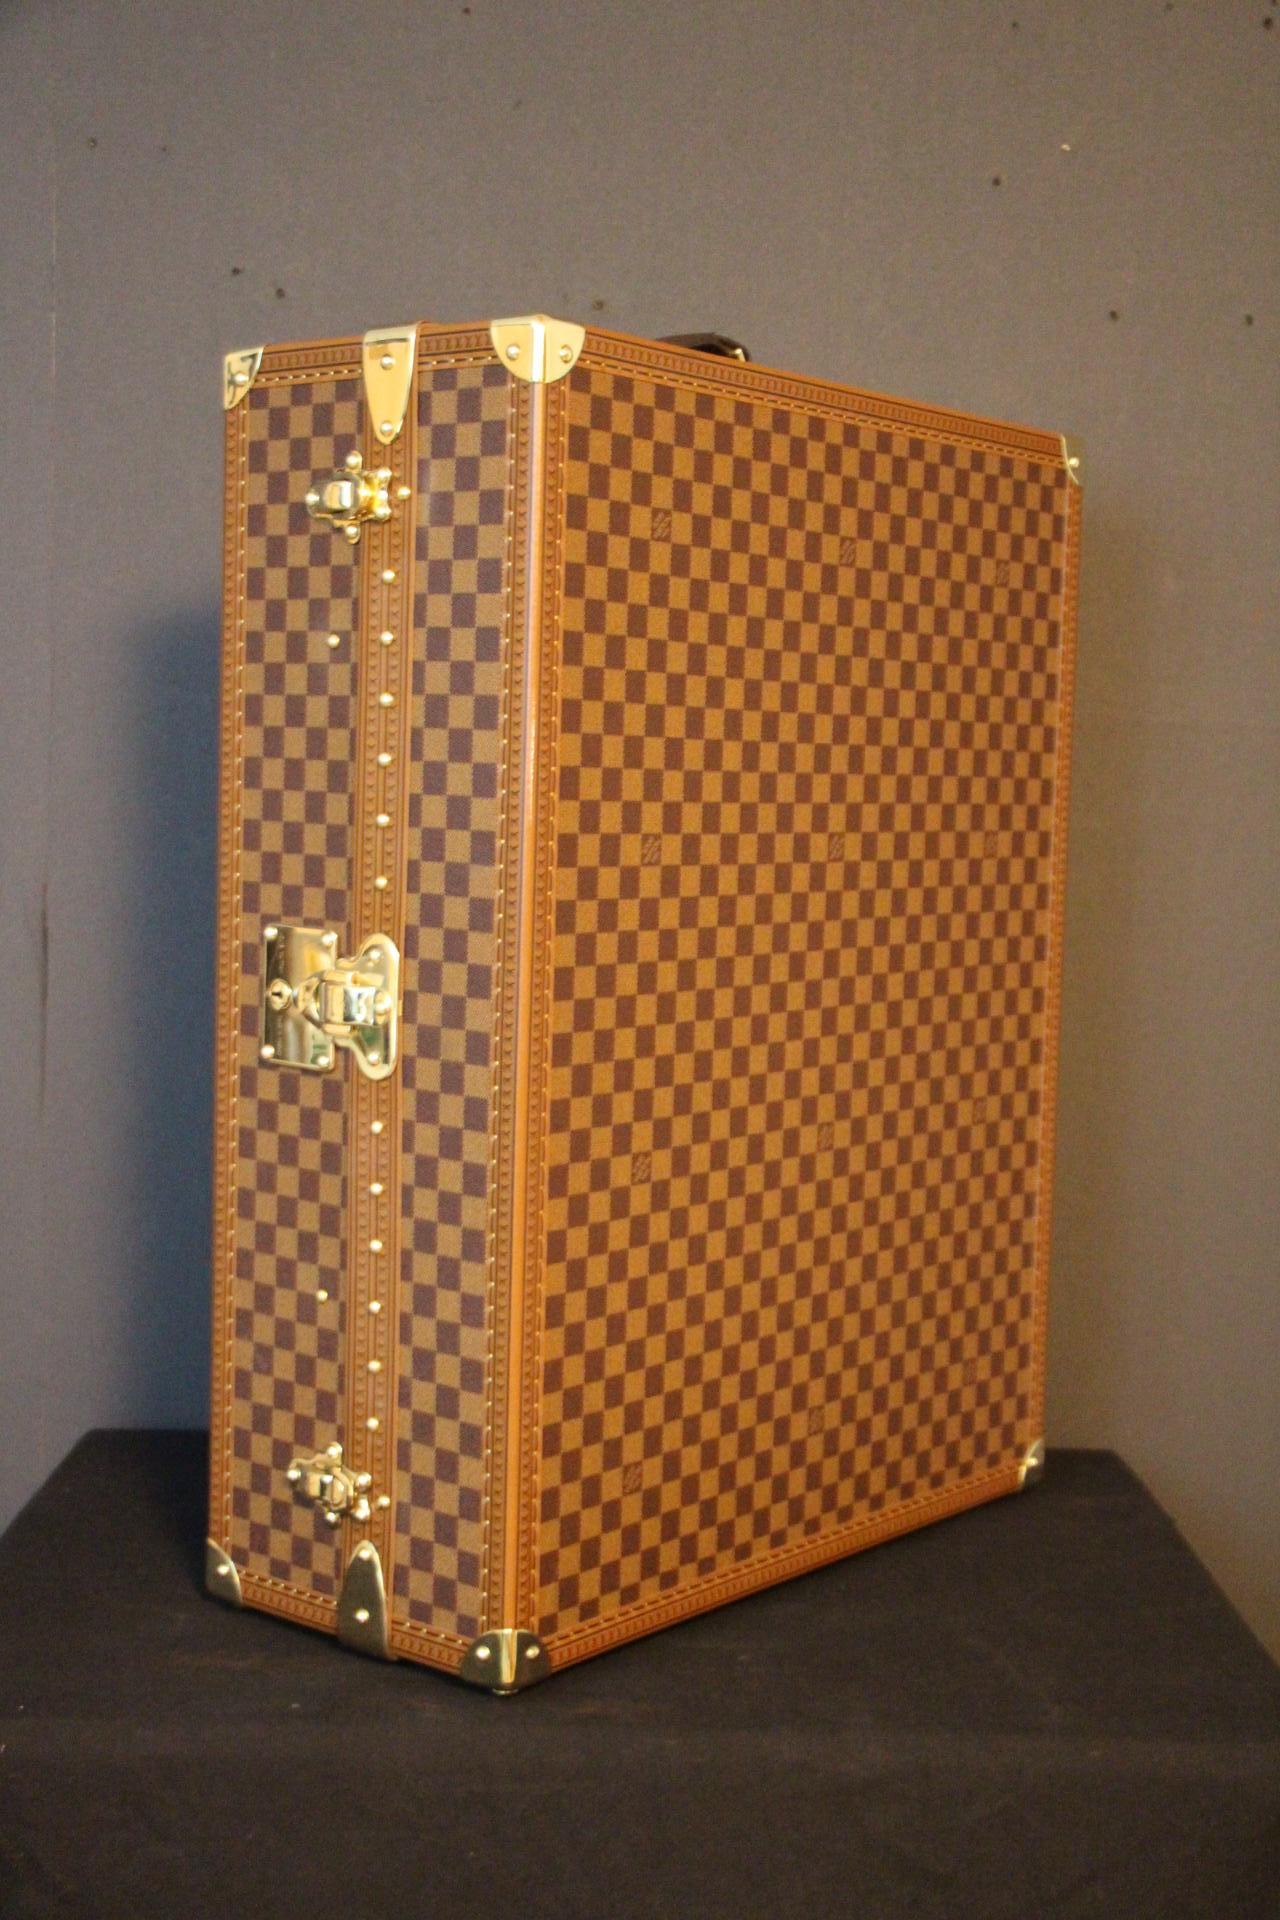 Dieser Koffer war eine Sonderbestellung aus den 2000er Jahren. Sie ist aus kariertem Segeltuch oder Damier ébène gefertigt und mit Schlössern, Ecken und Nieten aus massivem LV-Messing versehen. Auf der Oberseite befindet sich der Ledergriff mit